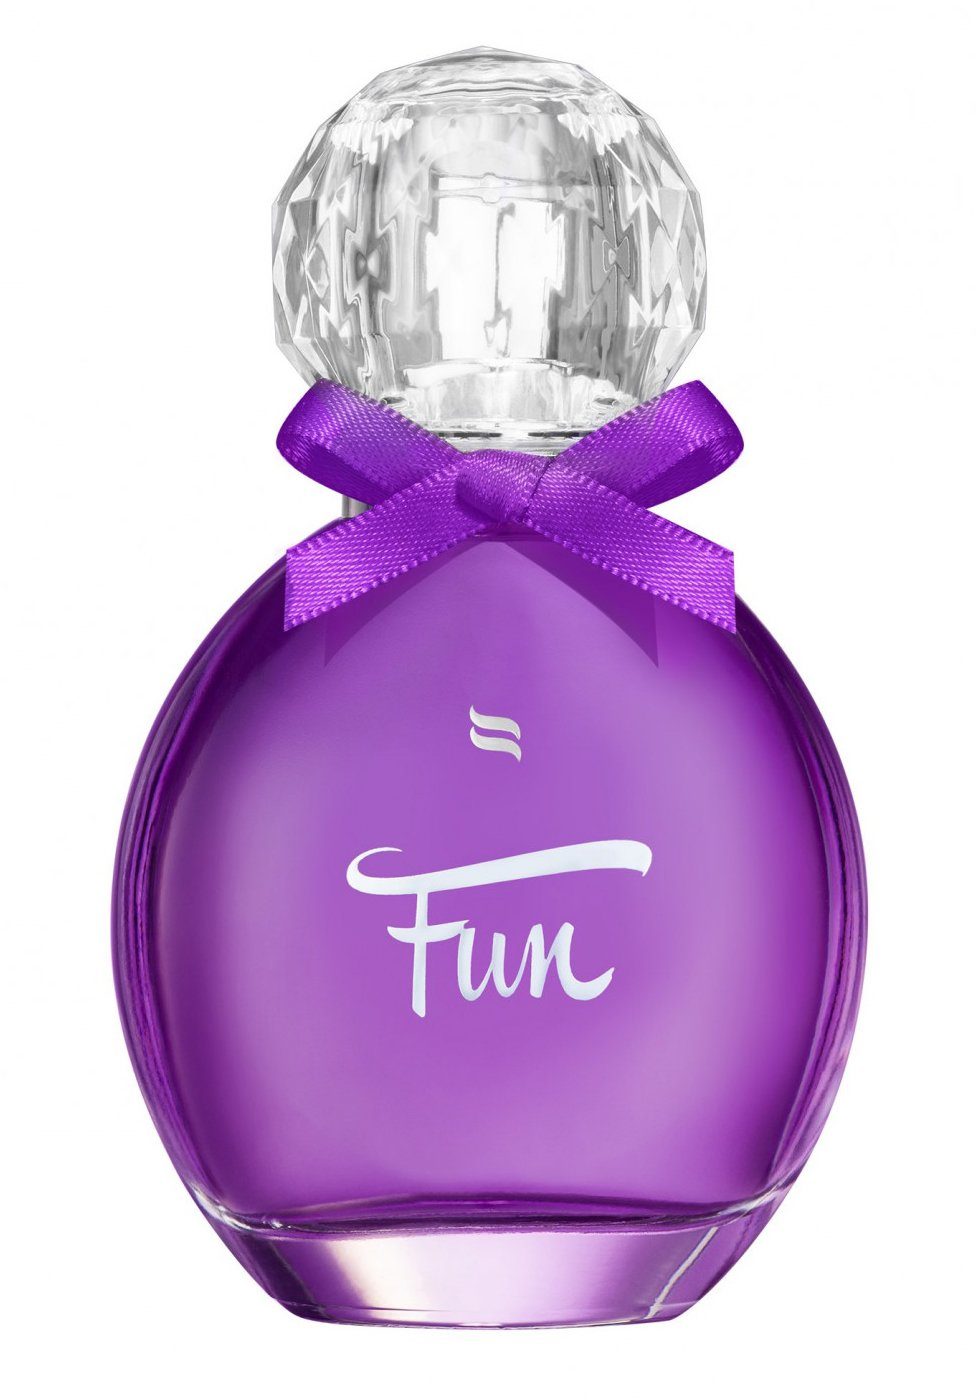 Obsessive Körperspray Parfum mit Pheromonen für Frauen - Fun